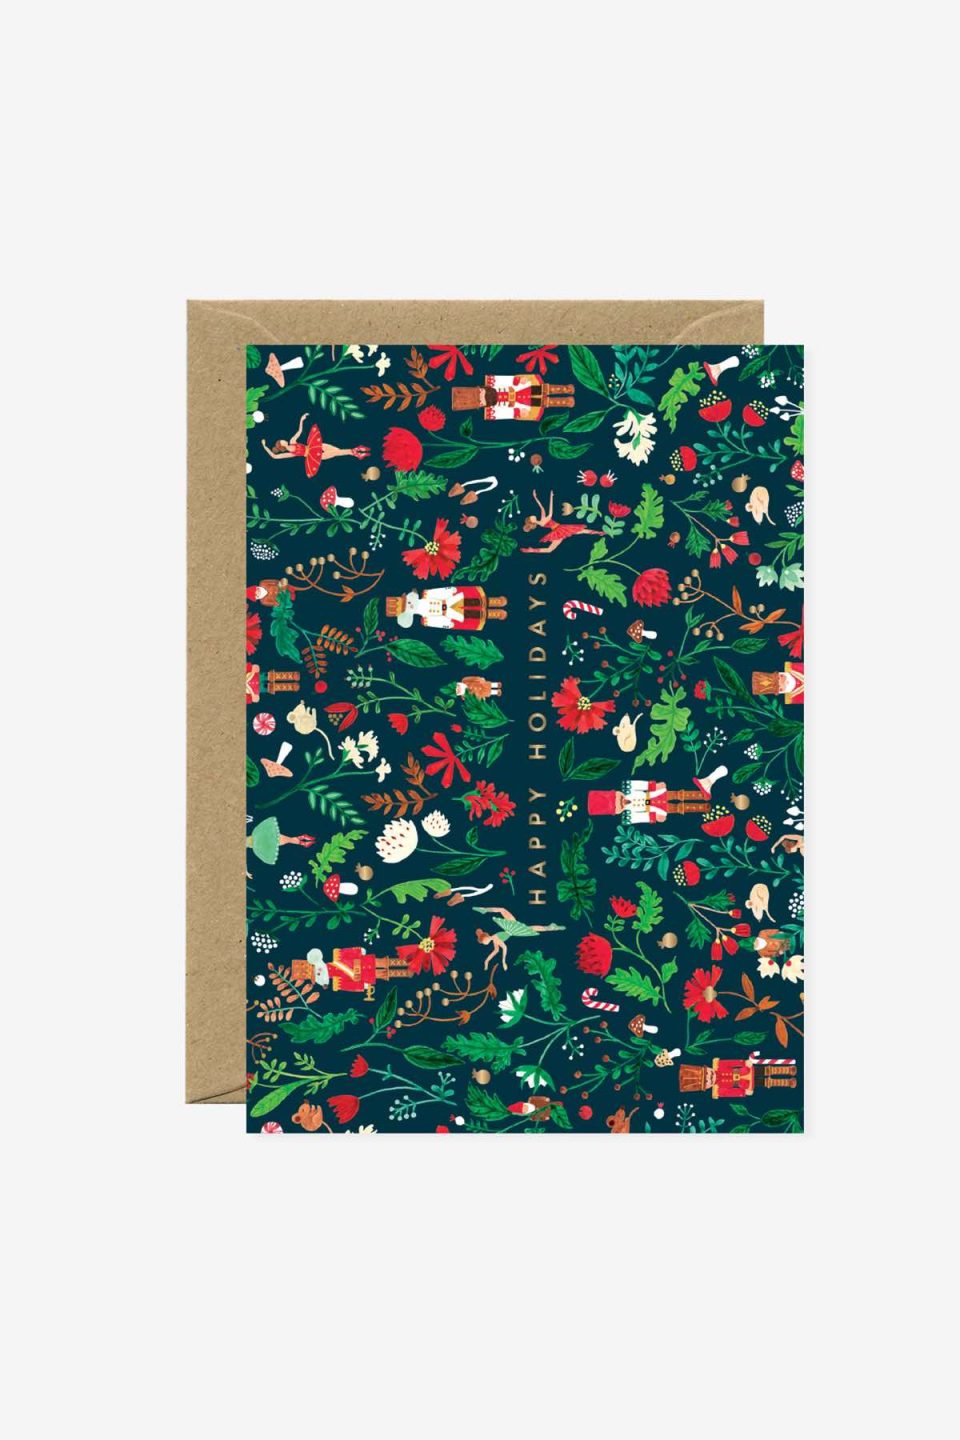 Božična čestitka s raznim božićnim motivima isprepletenim u dezen u zeleno-crvenim bojama s natpismo happy holidays, iz se vidi smeđa kuverta